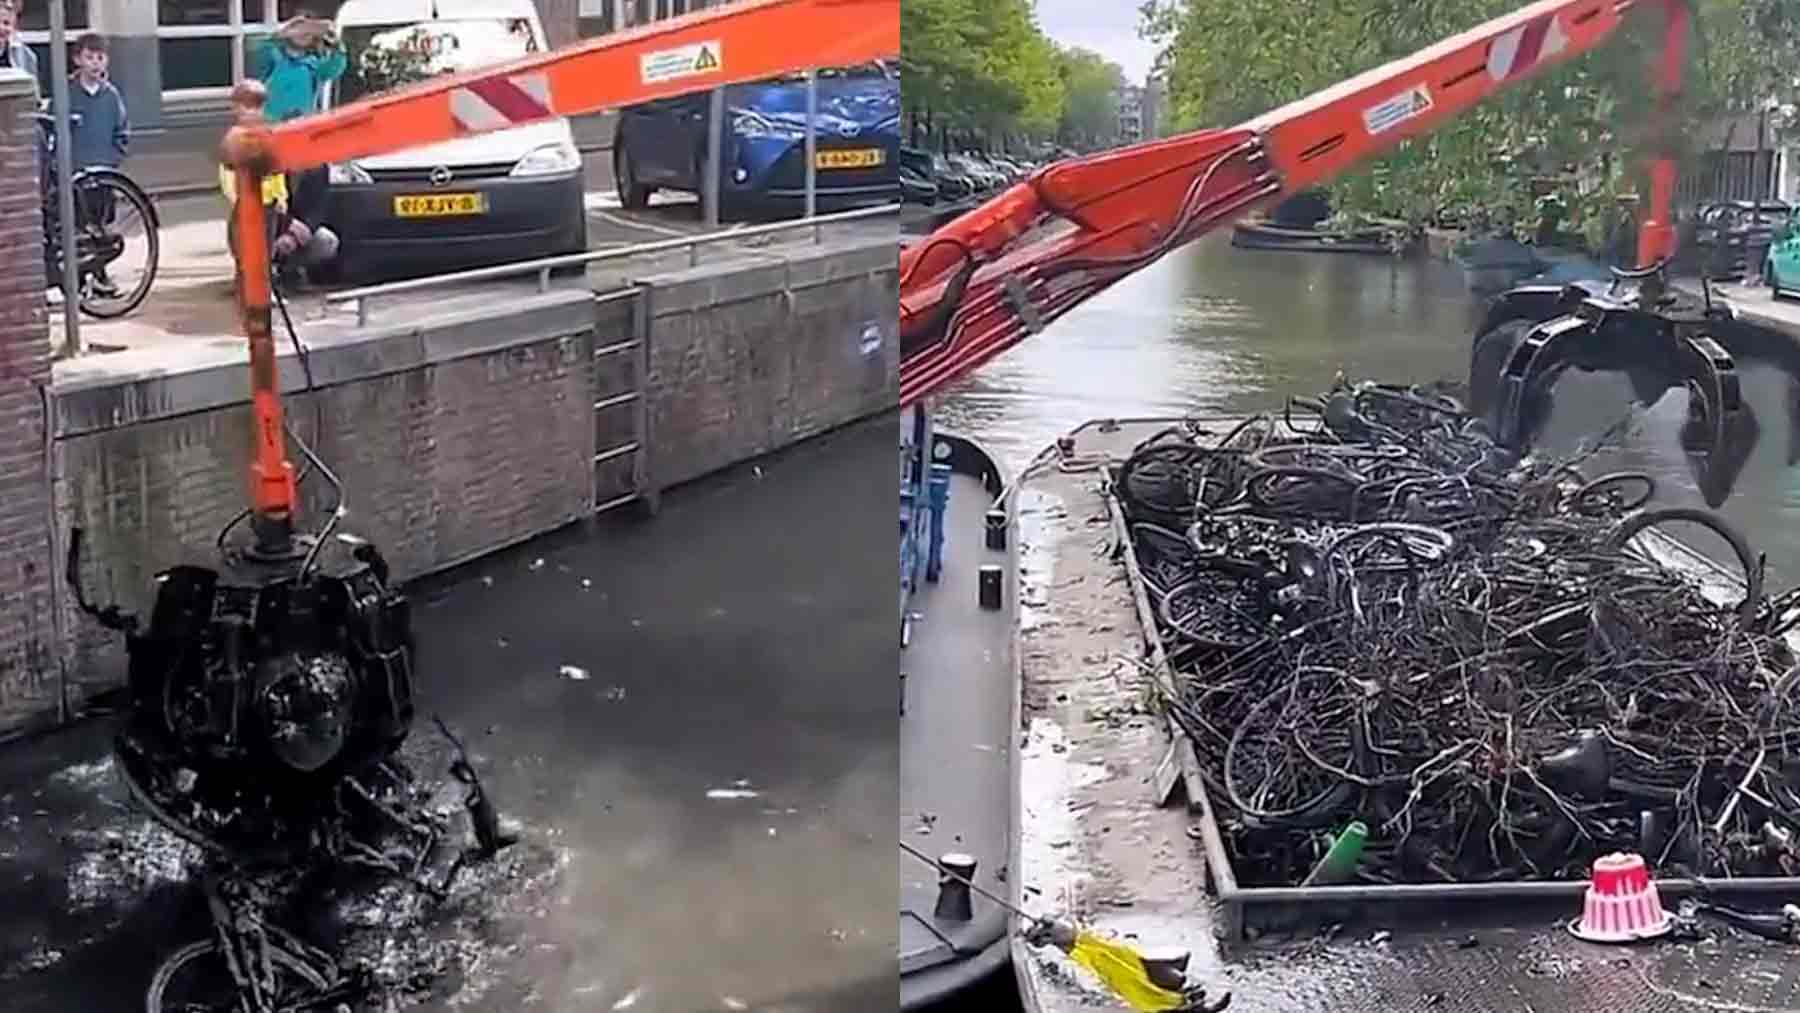 Limpieza en los canales de Amsterdam